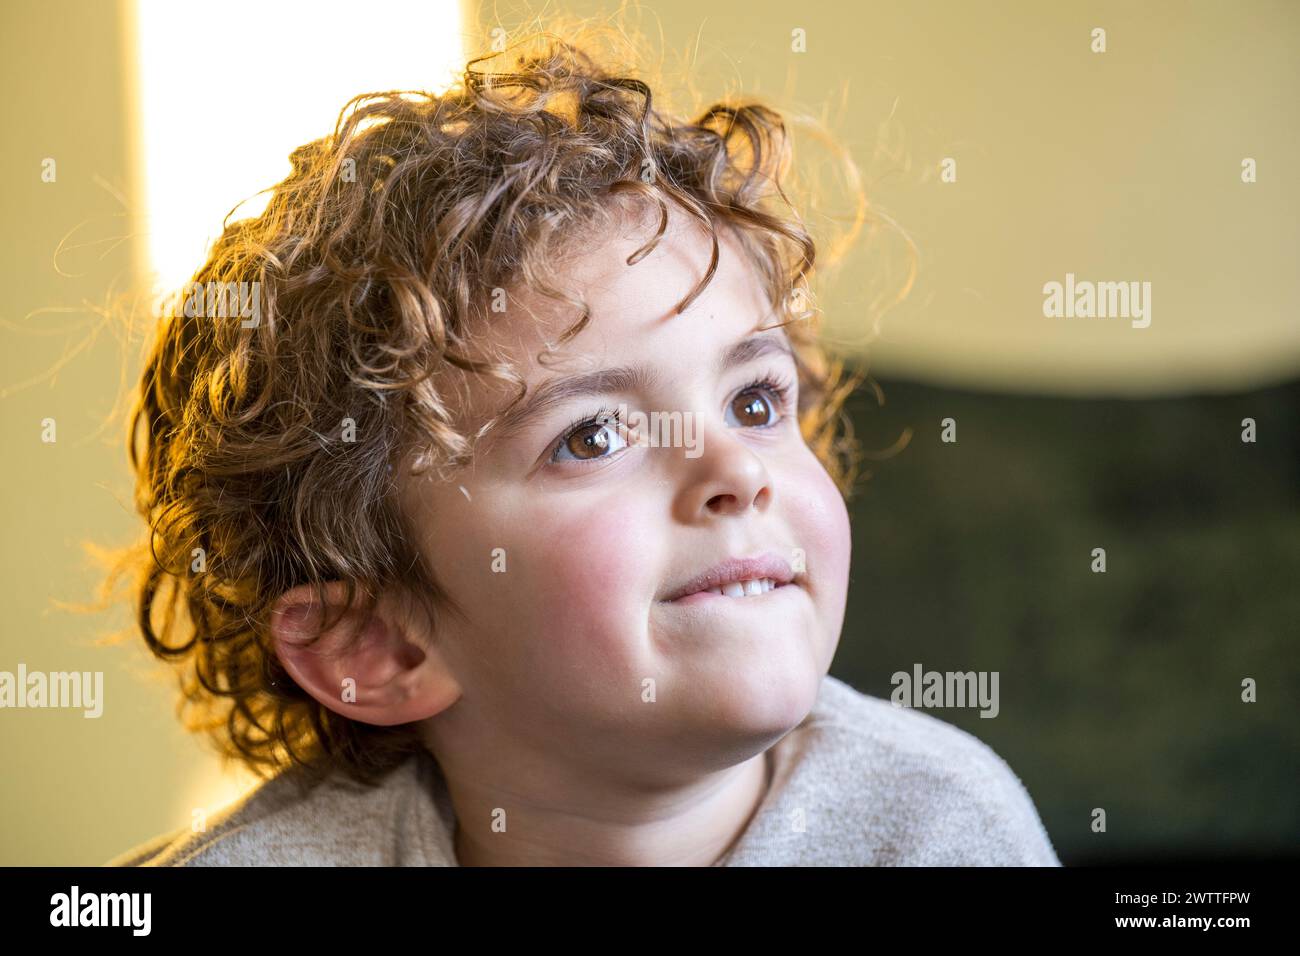 Jeune enfant avec des cheveux bouclés regardant vers le haut réfléchi dans une pièce chaleureusement éclairée. Banque D'Images